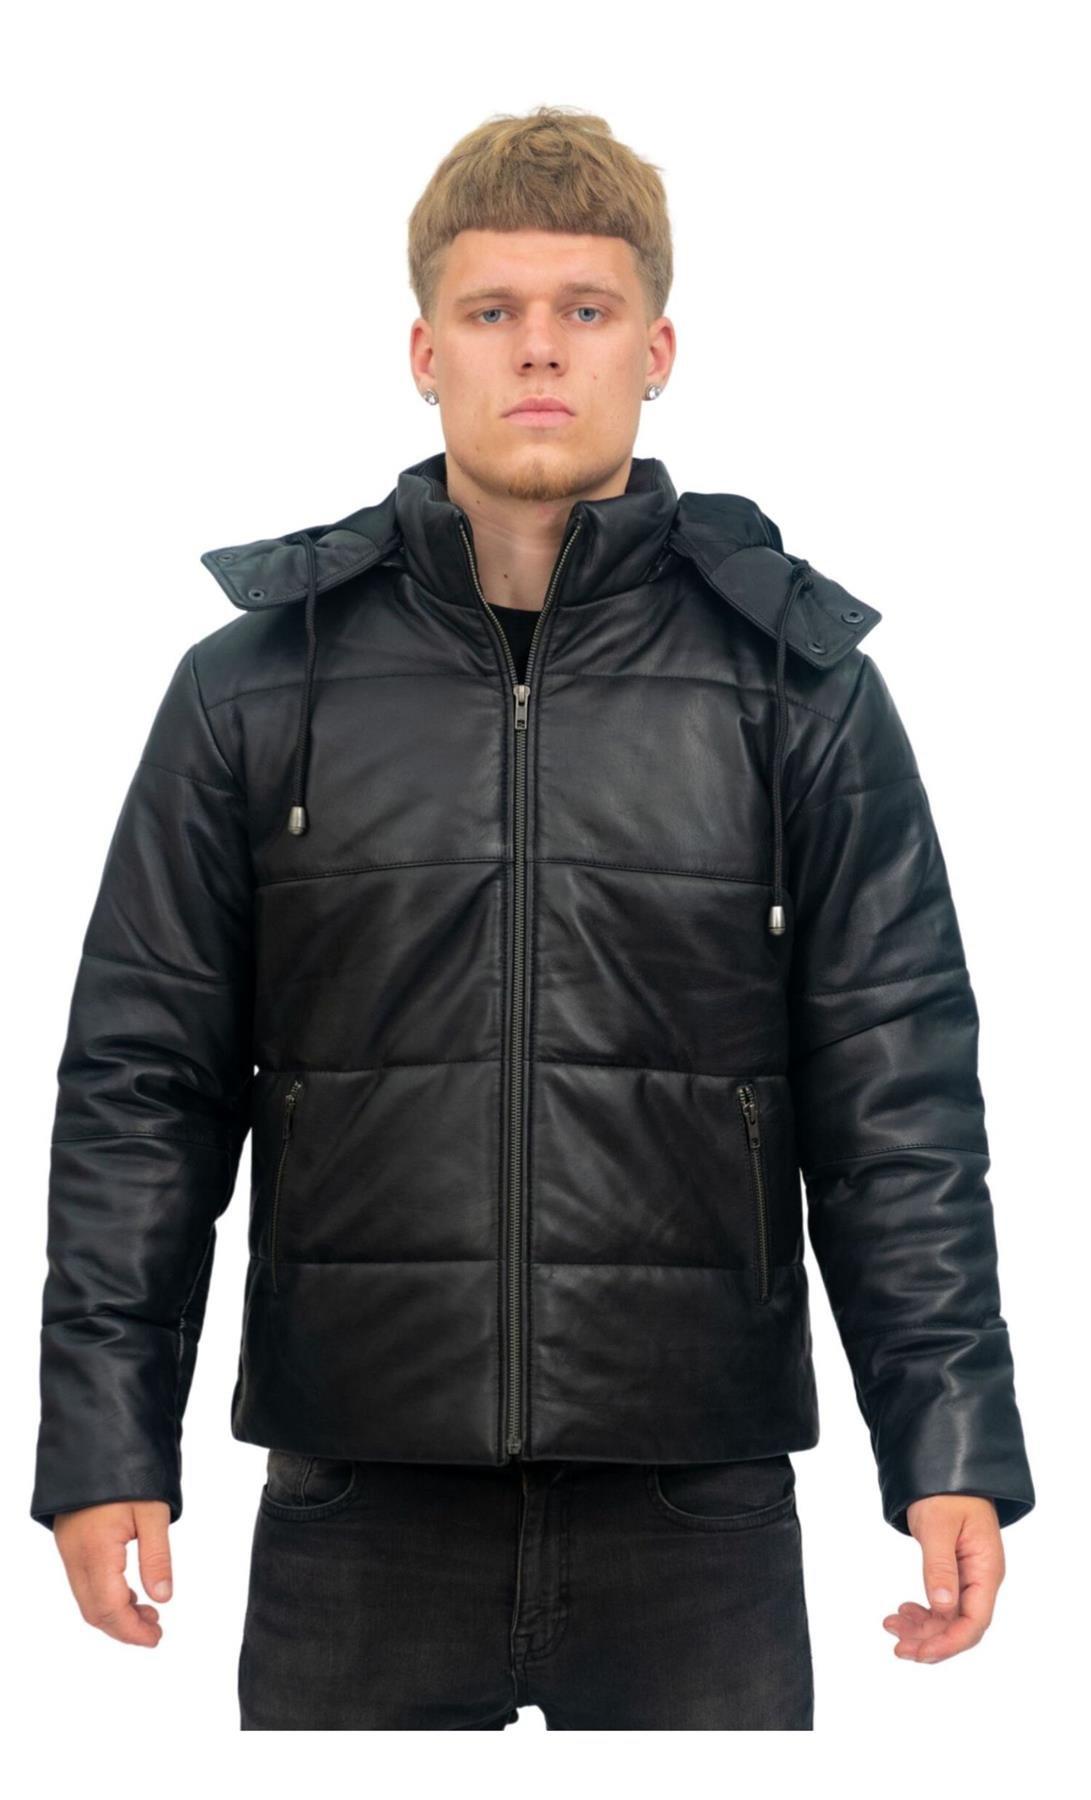 Кожаный бомбер-пуховик-Аугсбург Infinity Leather, черный стеганая утепленная куртка с капюшоном